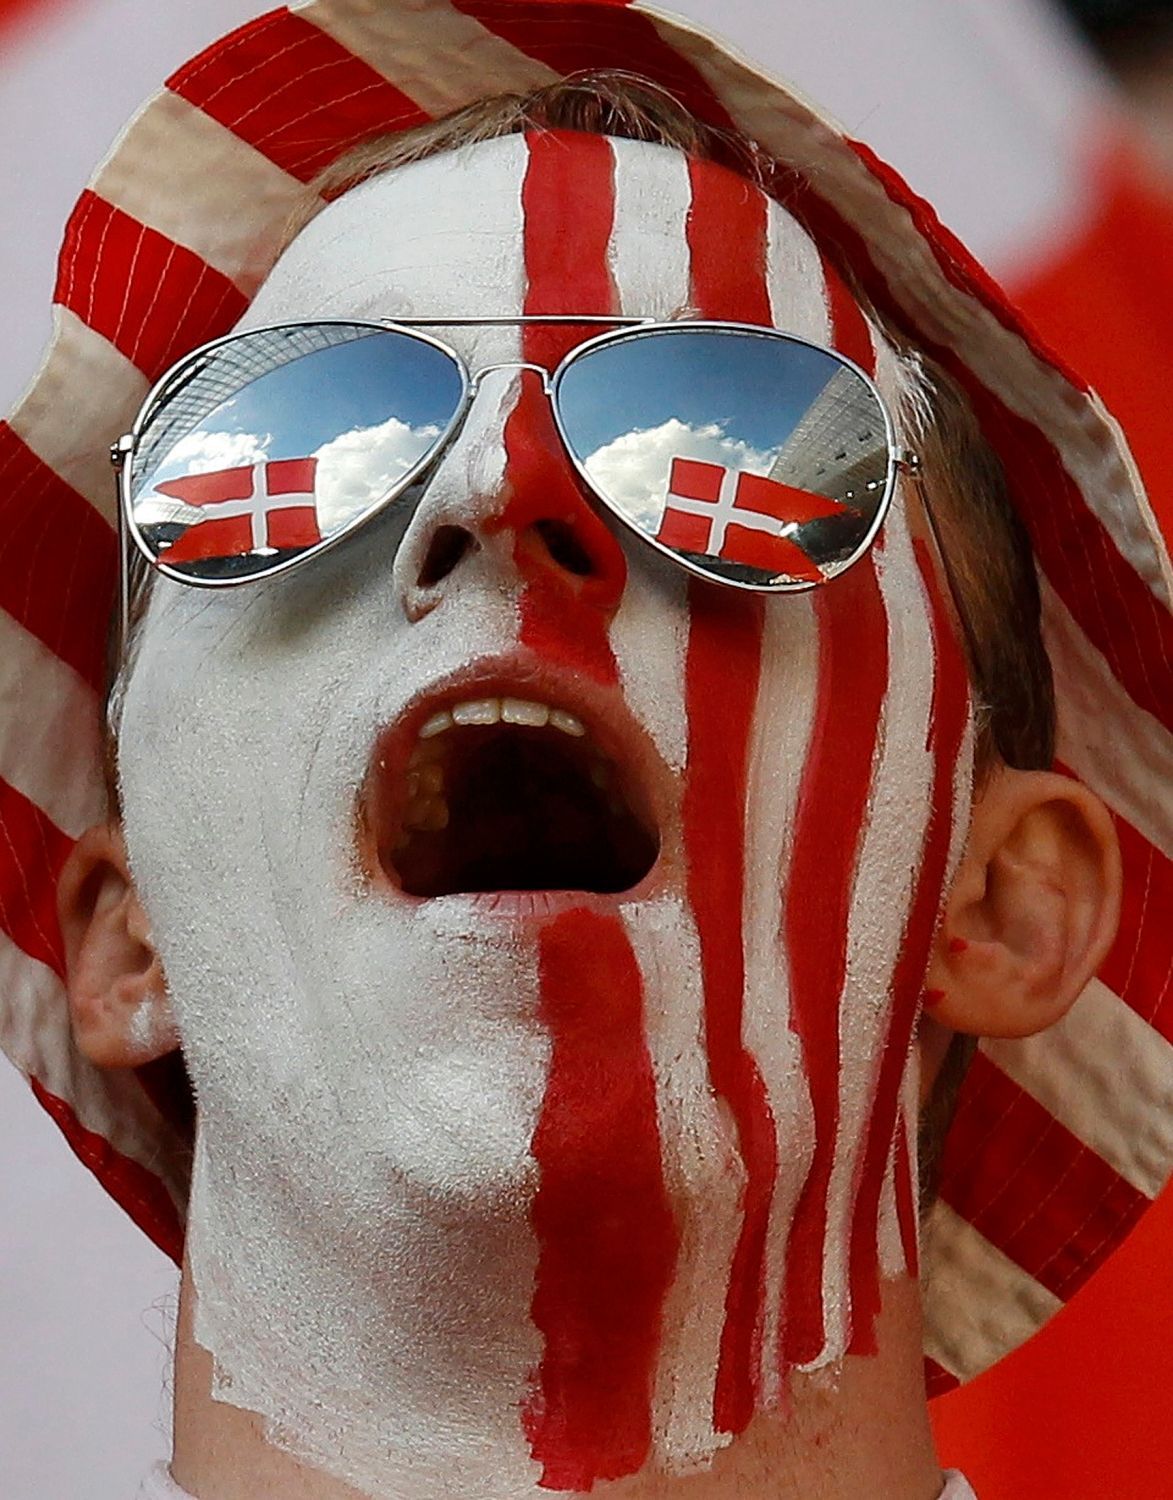 Dánský fanoušek před utkáním Dánska s Portugalskem na Euru 2012